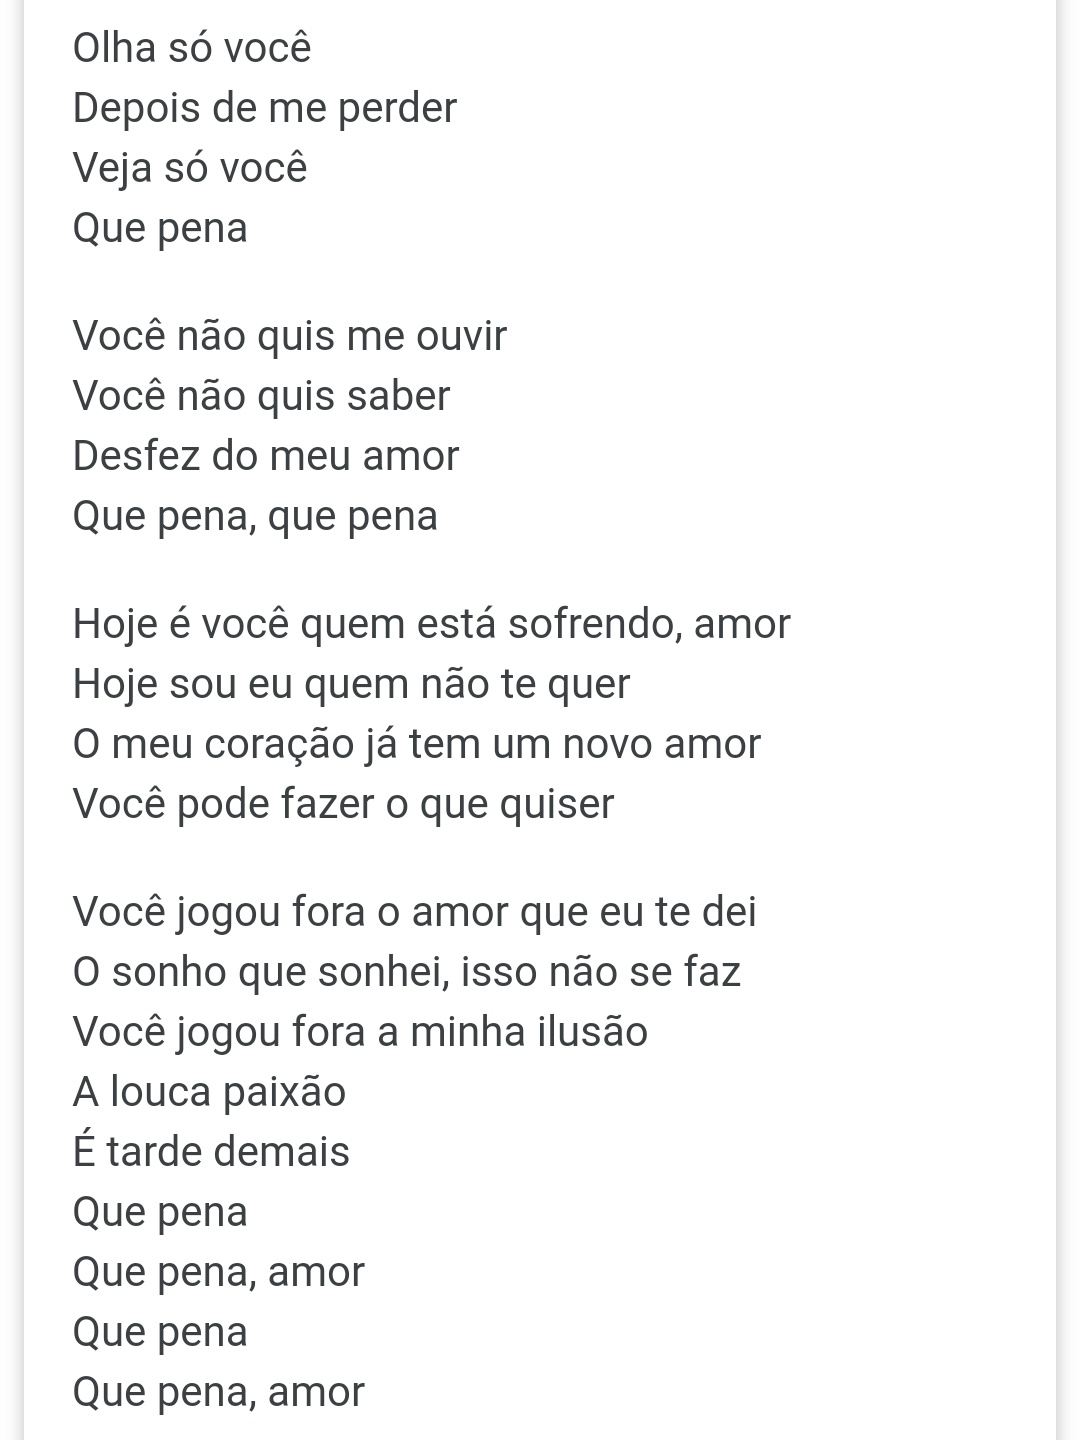 Paola on X: Letra da musica do Luiz Carlos CASADO pra Luiza